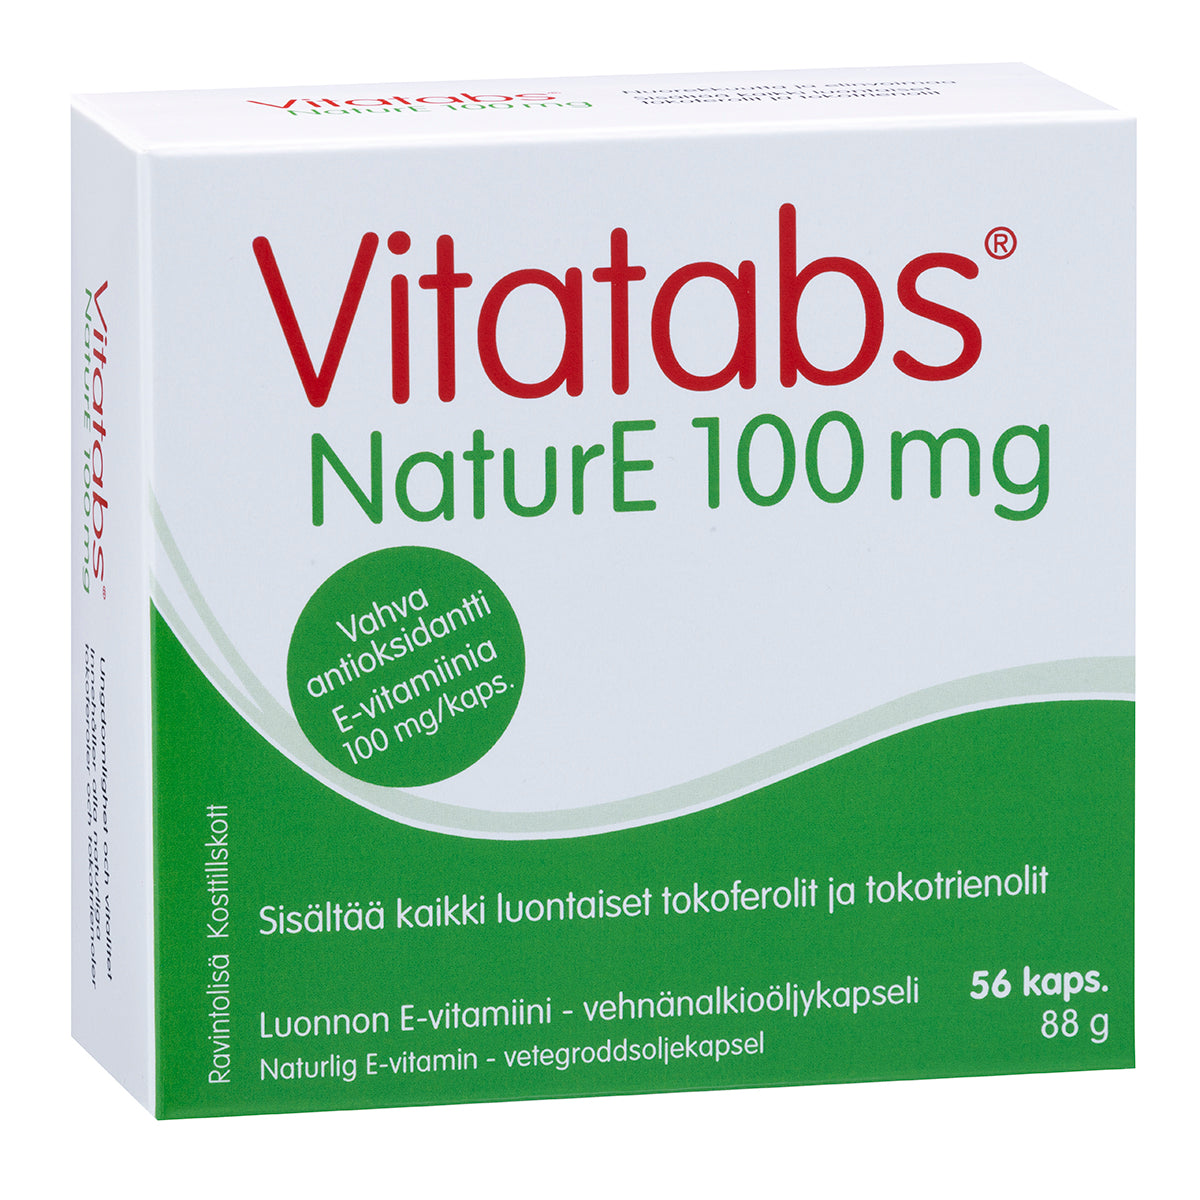 Vitatabs NaturE 100 mg - E-vitamiini 56 kaps.